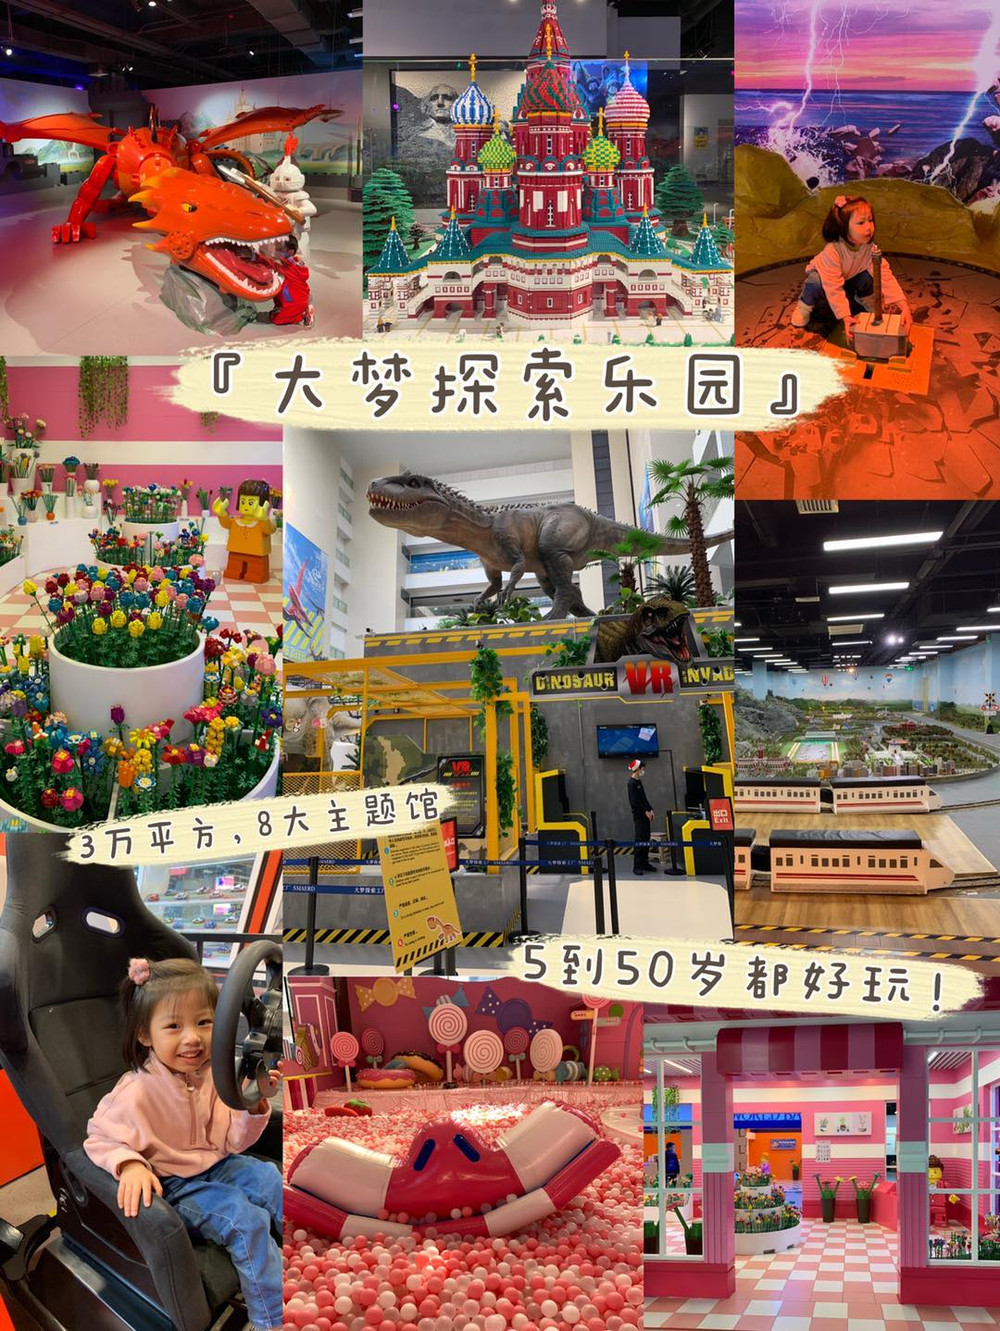 深圳周末带娃去哪玩一定要来传说5到50岁都好玩的大梦探索乐园!